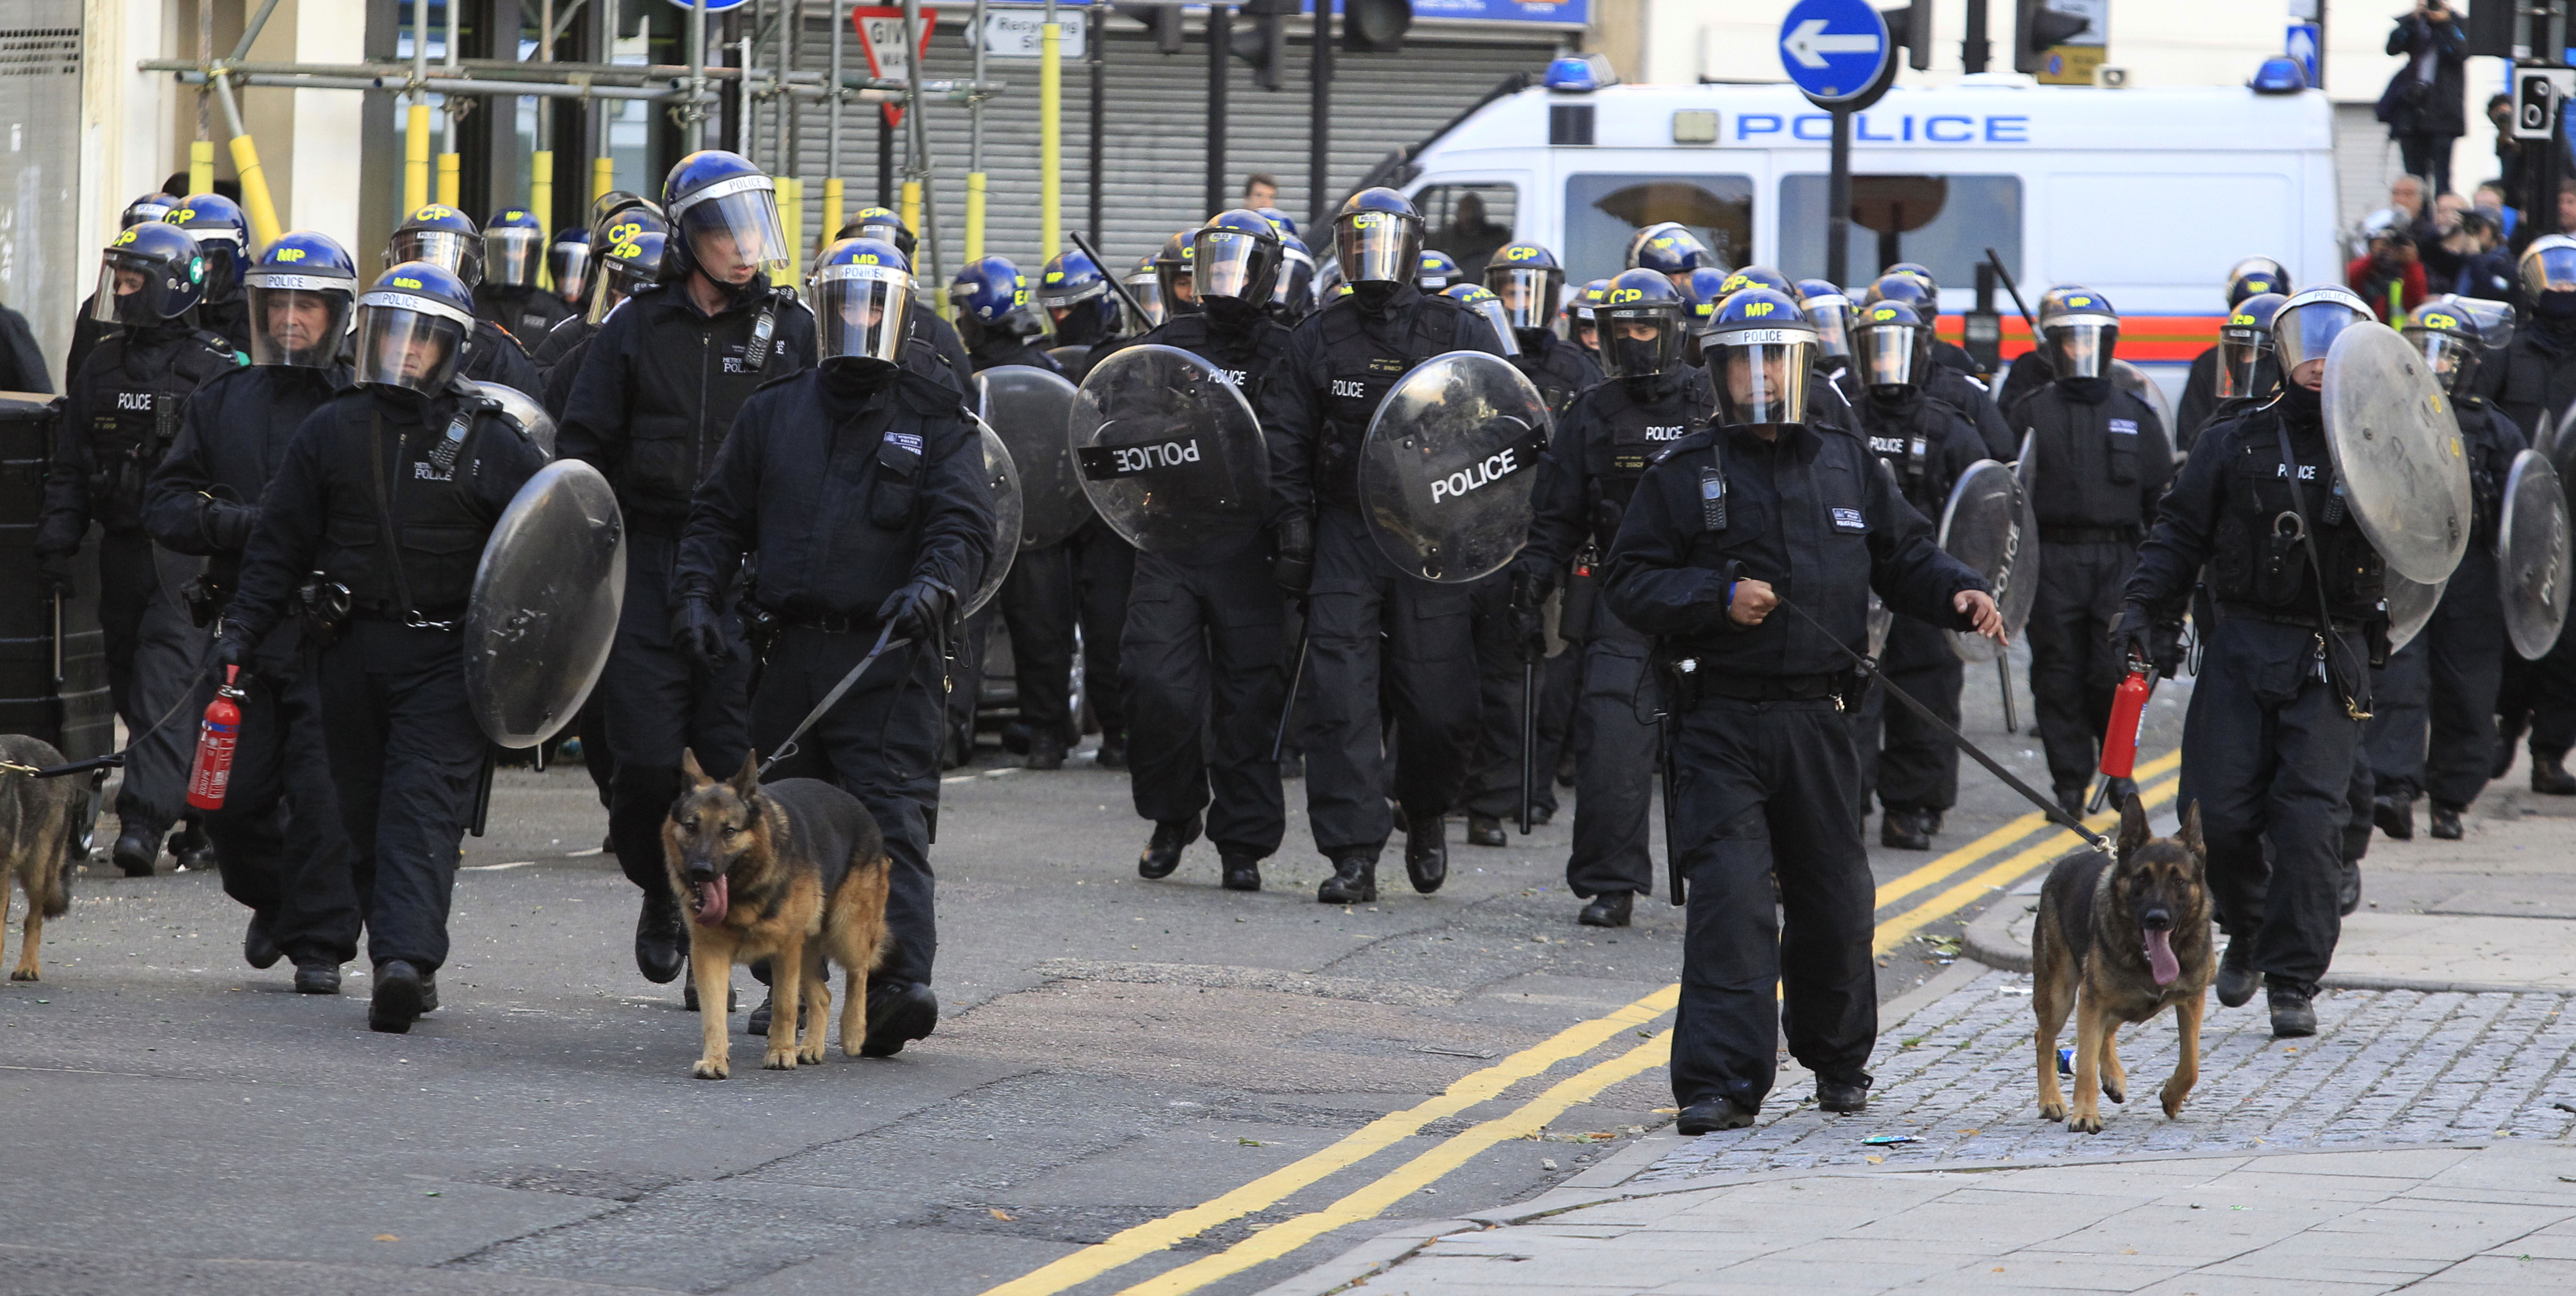 Det var senast i augusti 2011 har londonpolisen skjutit en misstänkt brottsling.